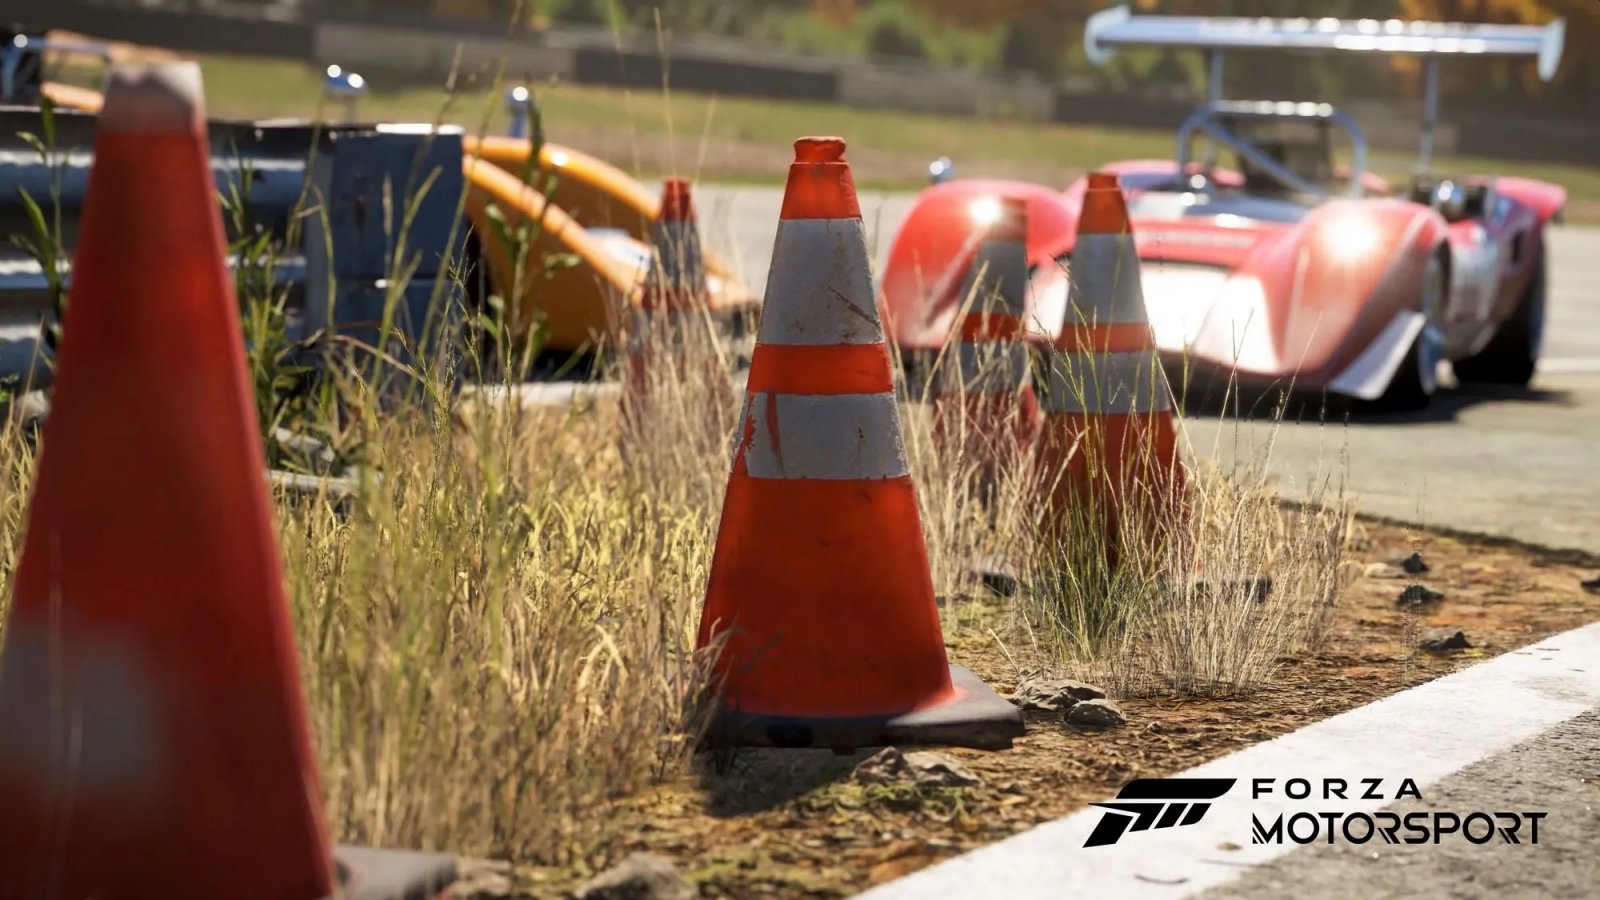 Forza Motorsport e i problemi dietro le quinte: ex-sviluppatore si apre